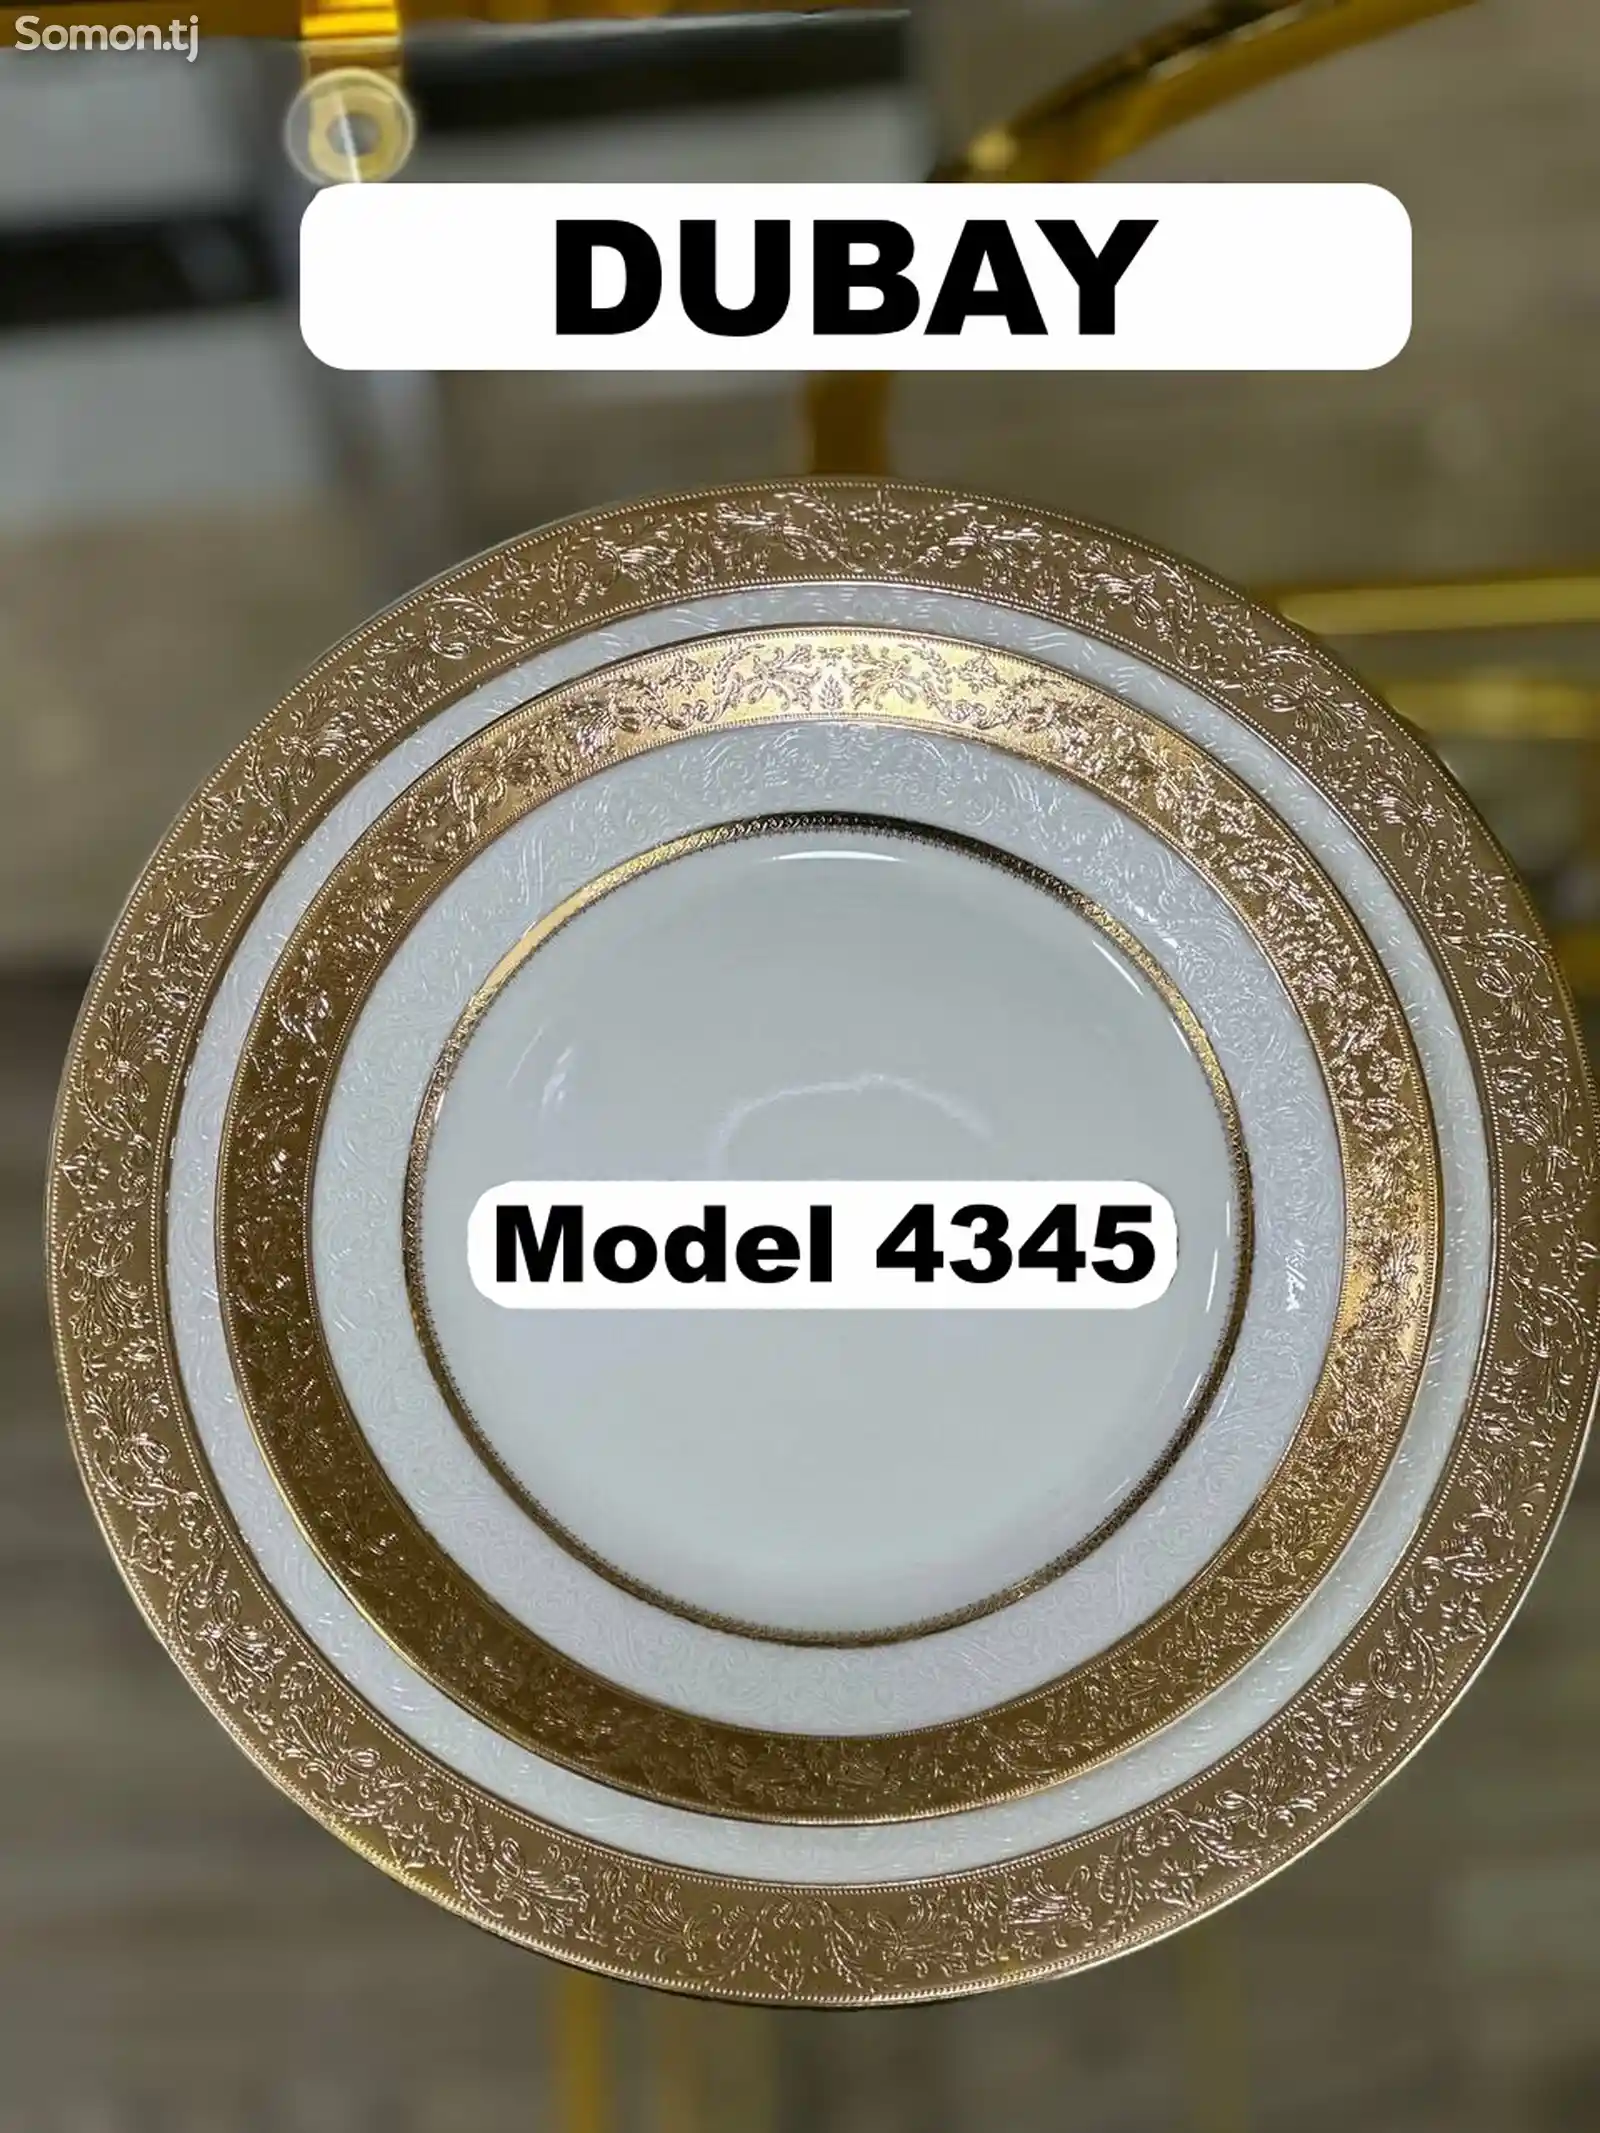 Набор посуды Dubay-4345 комплект 6-7